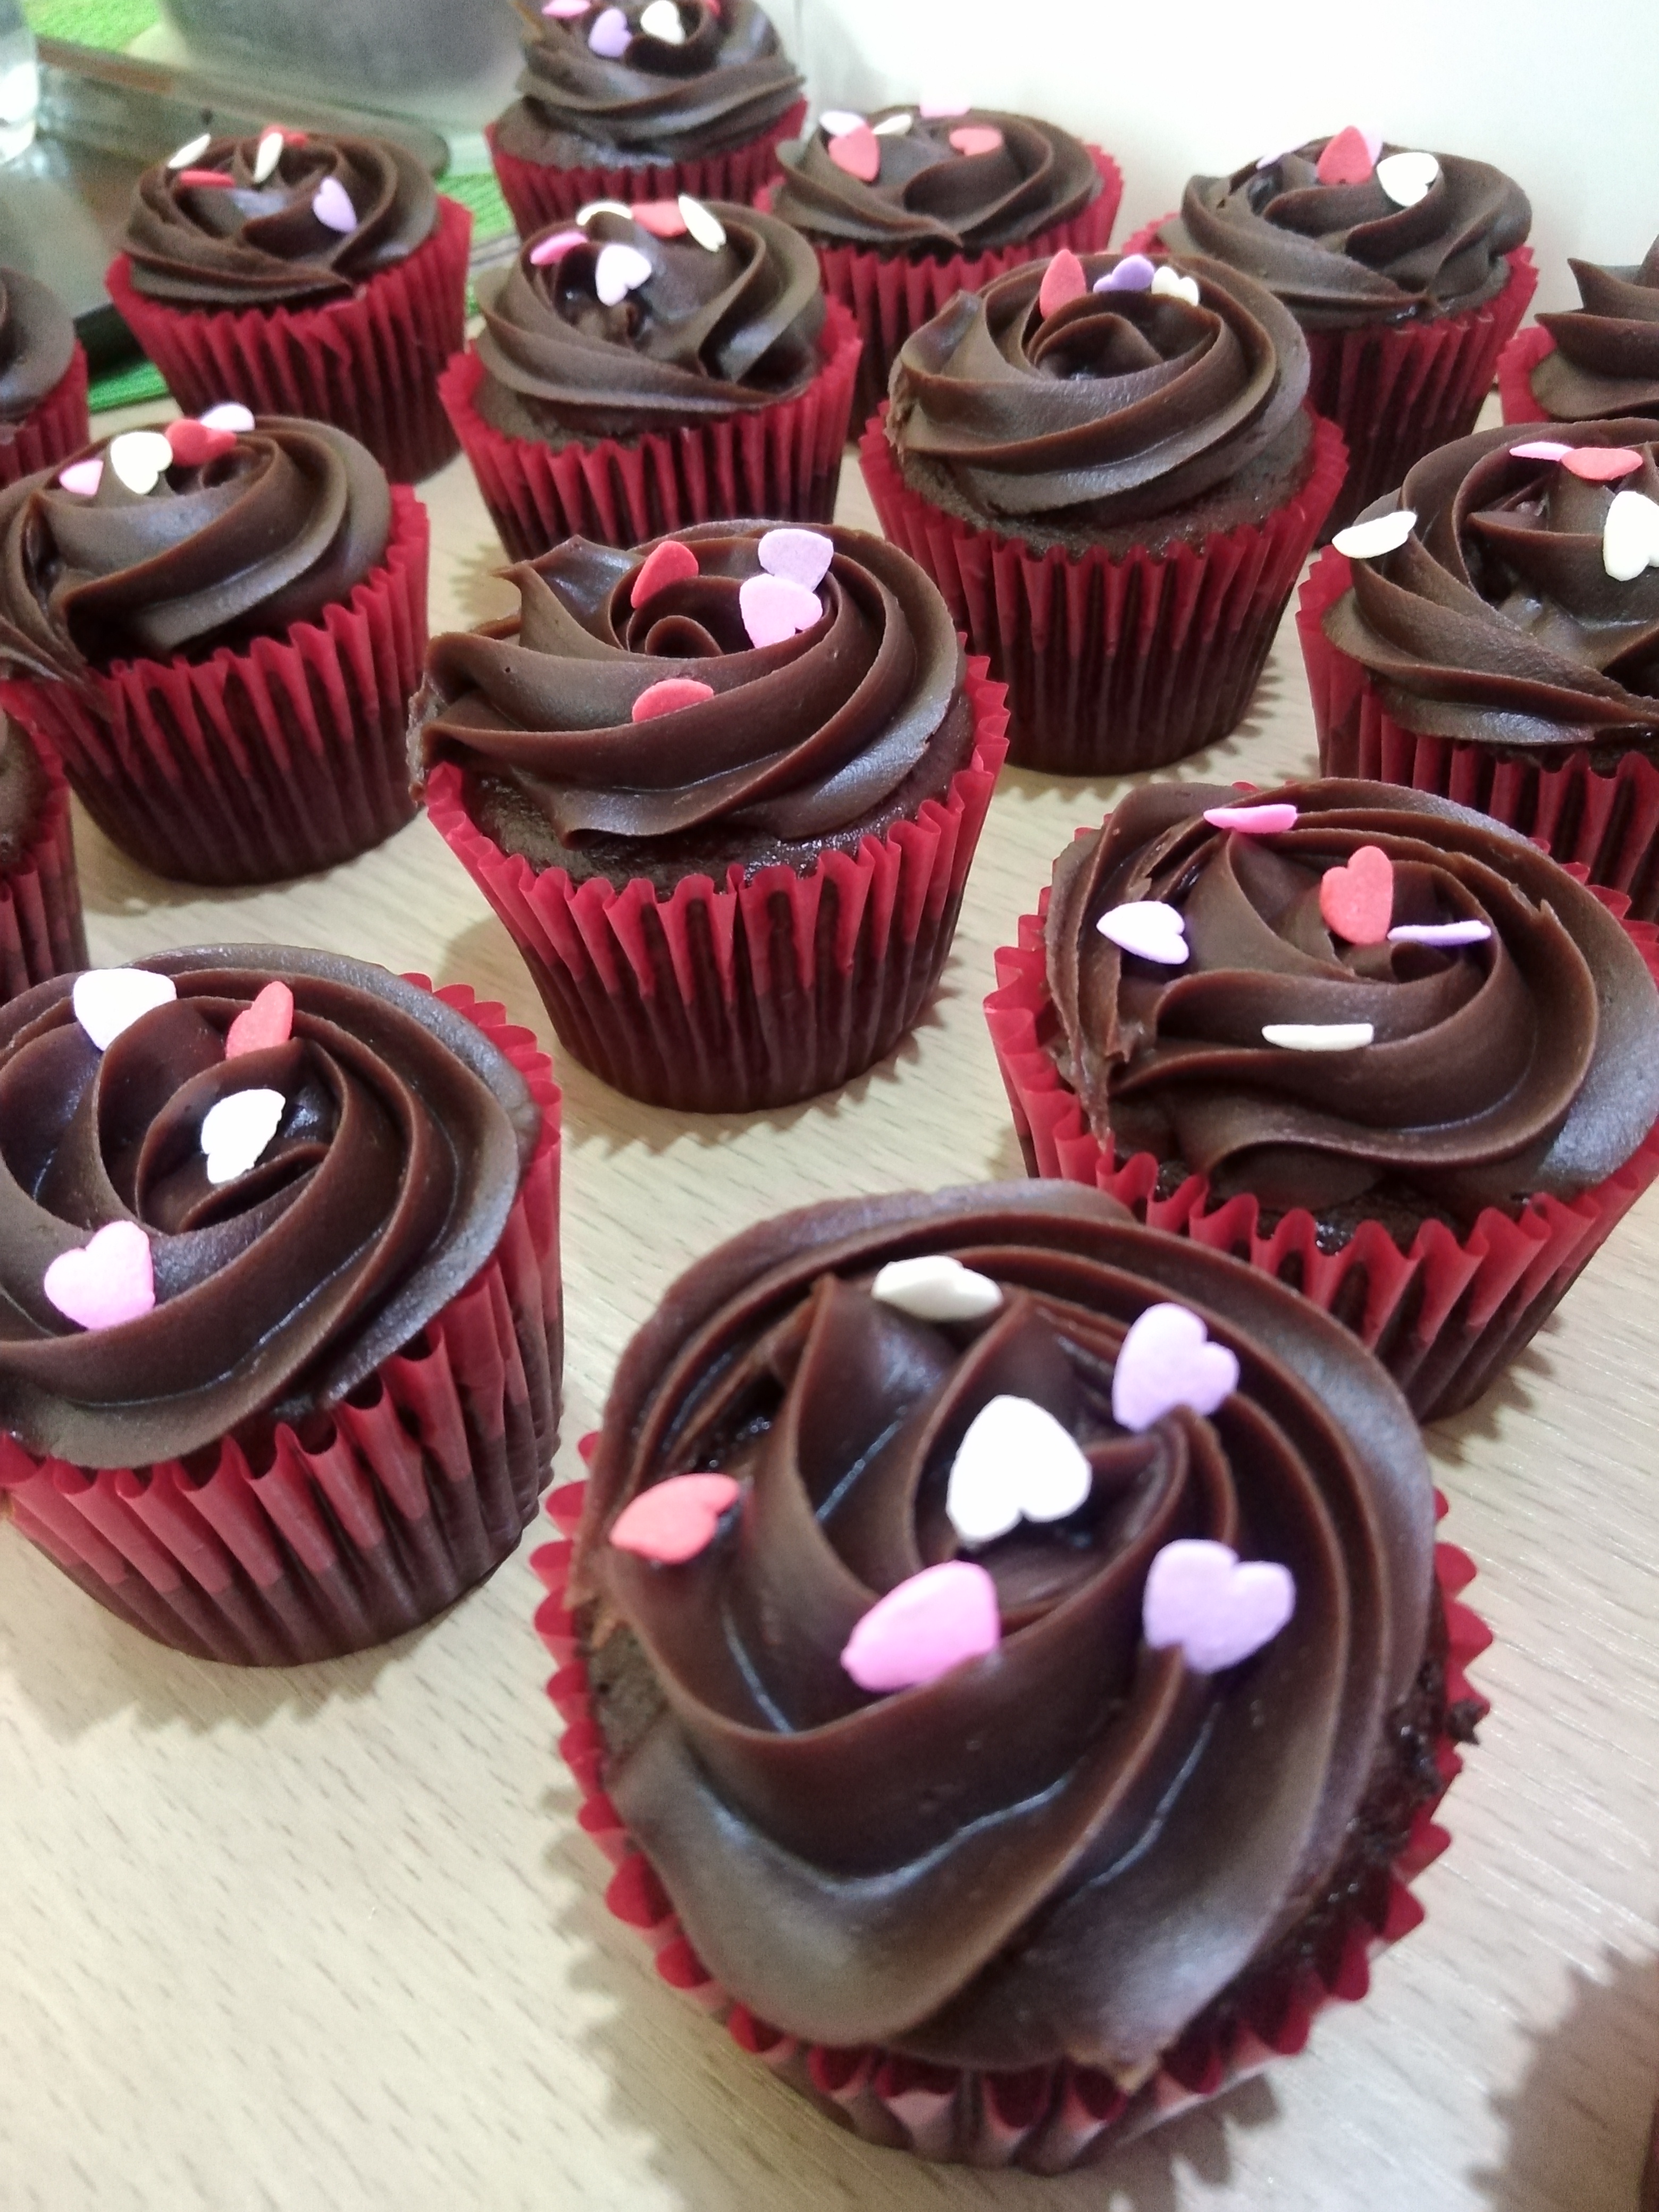 Cupcakes decorados con ganache de chocolate